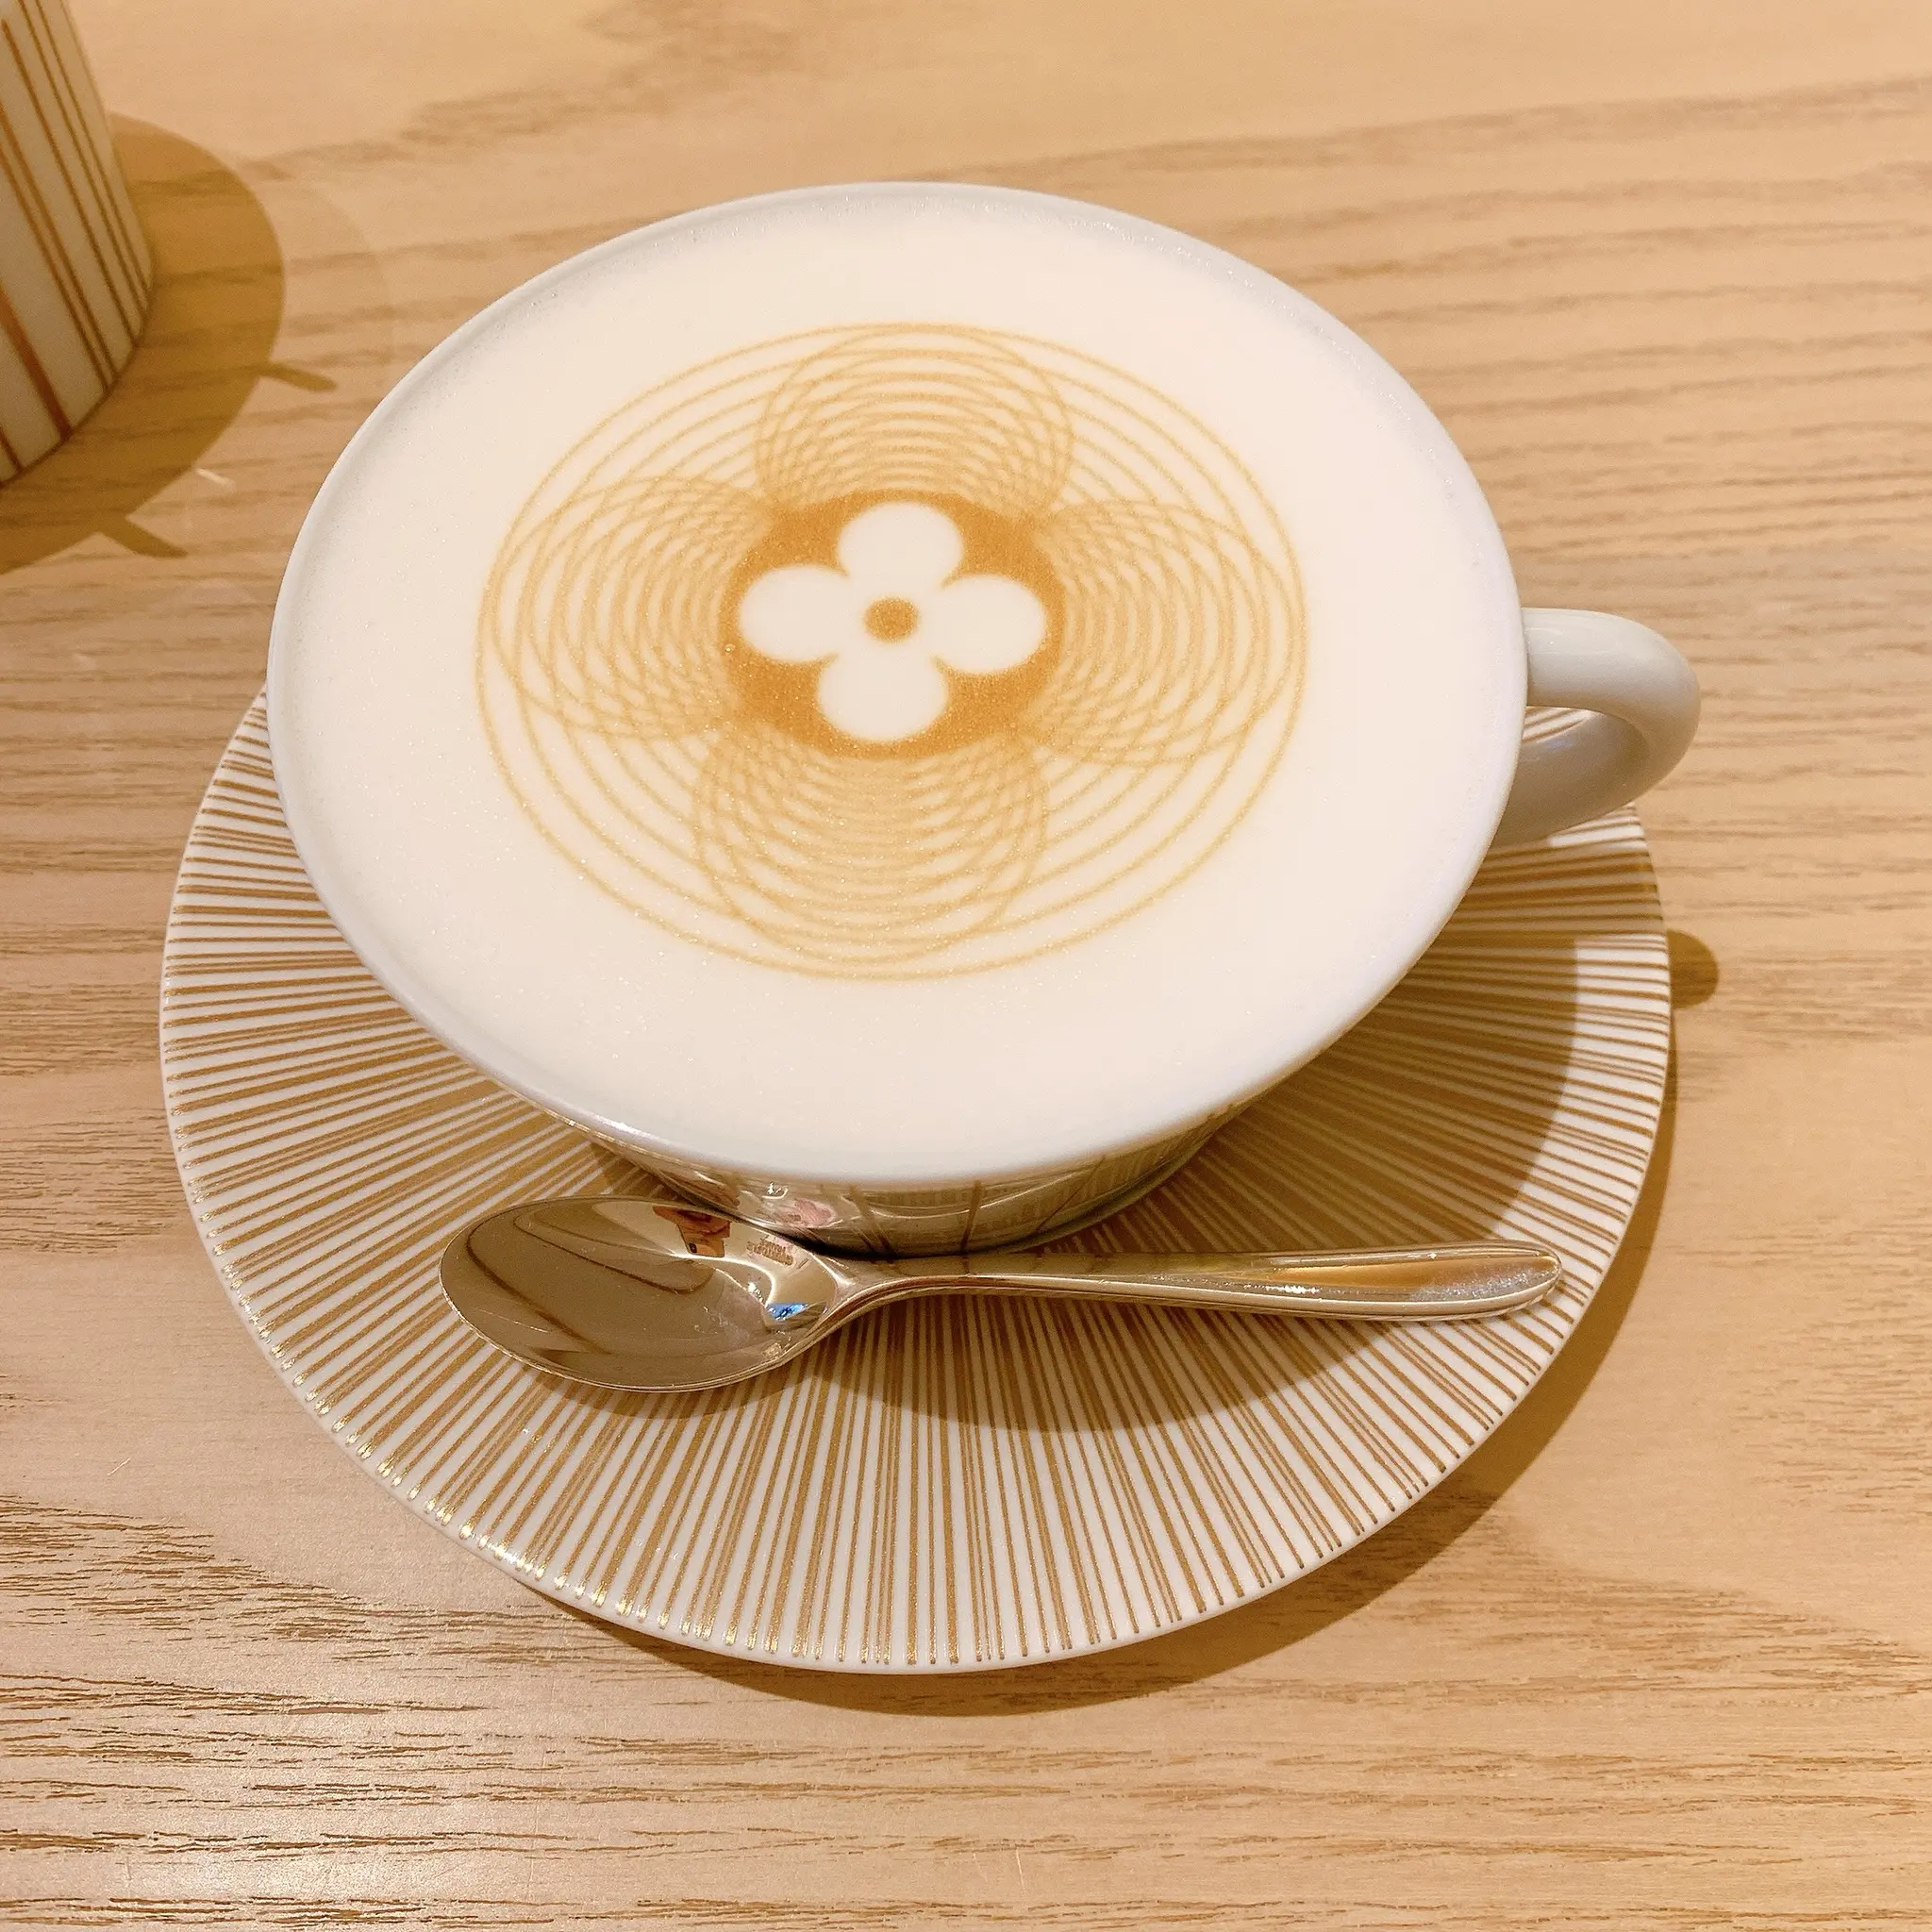 大阪 世界初 ルイヴィトンのカフェ Le Cafe V に行ってみたら一番人気のミルフィーユが大きすぎる ブルジョアな気分になるカフェに潜入 Moreインフルエンサーズブログ Daily More